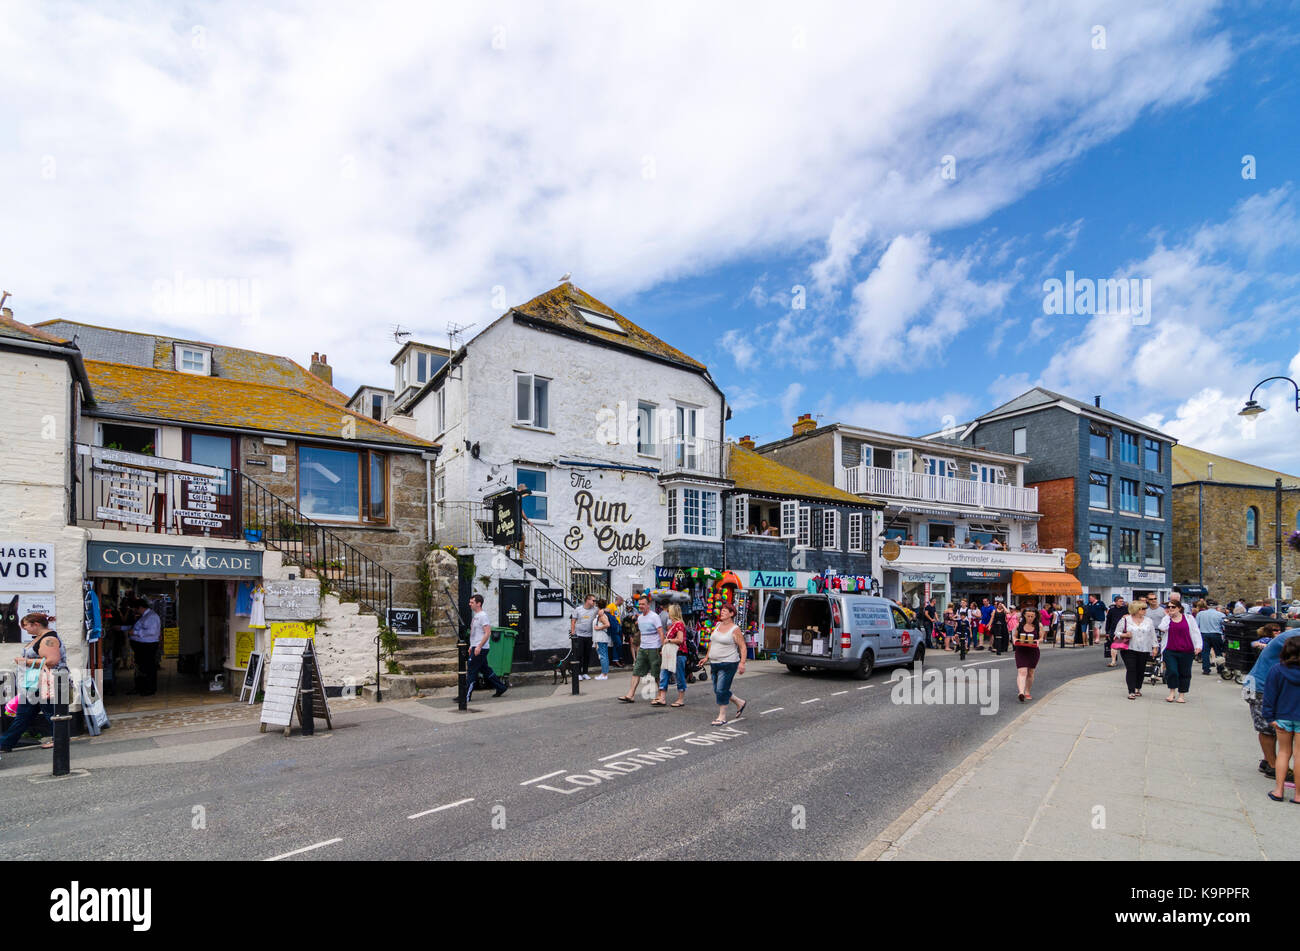 Negozi e gallerie su Wharf Road occupato con cittadini e turisti. Costiera inglese la cittadina sul mare di St Ives, Cornwall, England Regno Unito Foto Stock